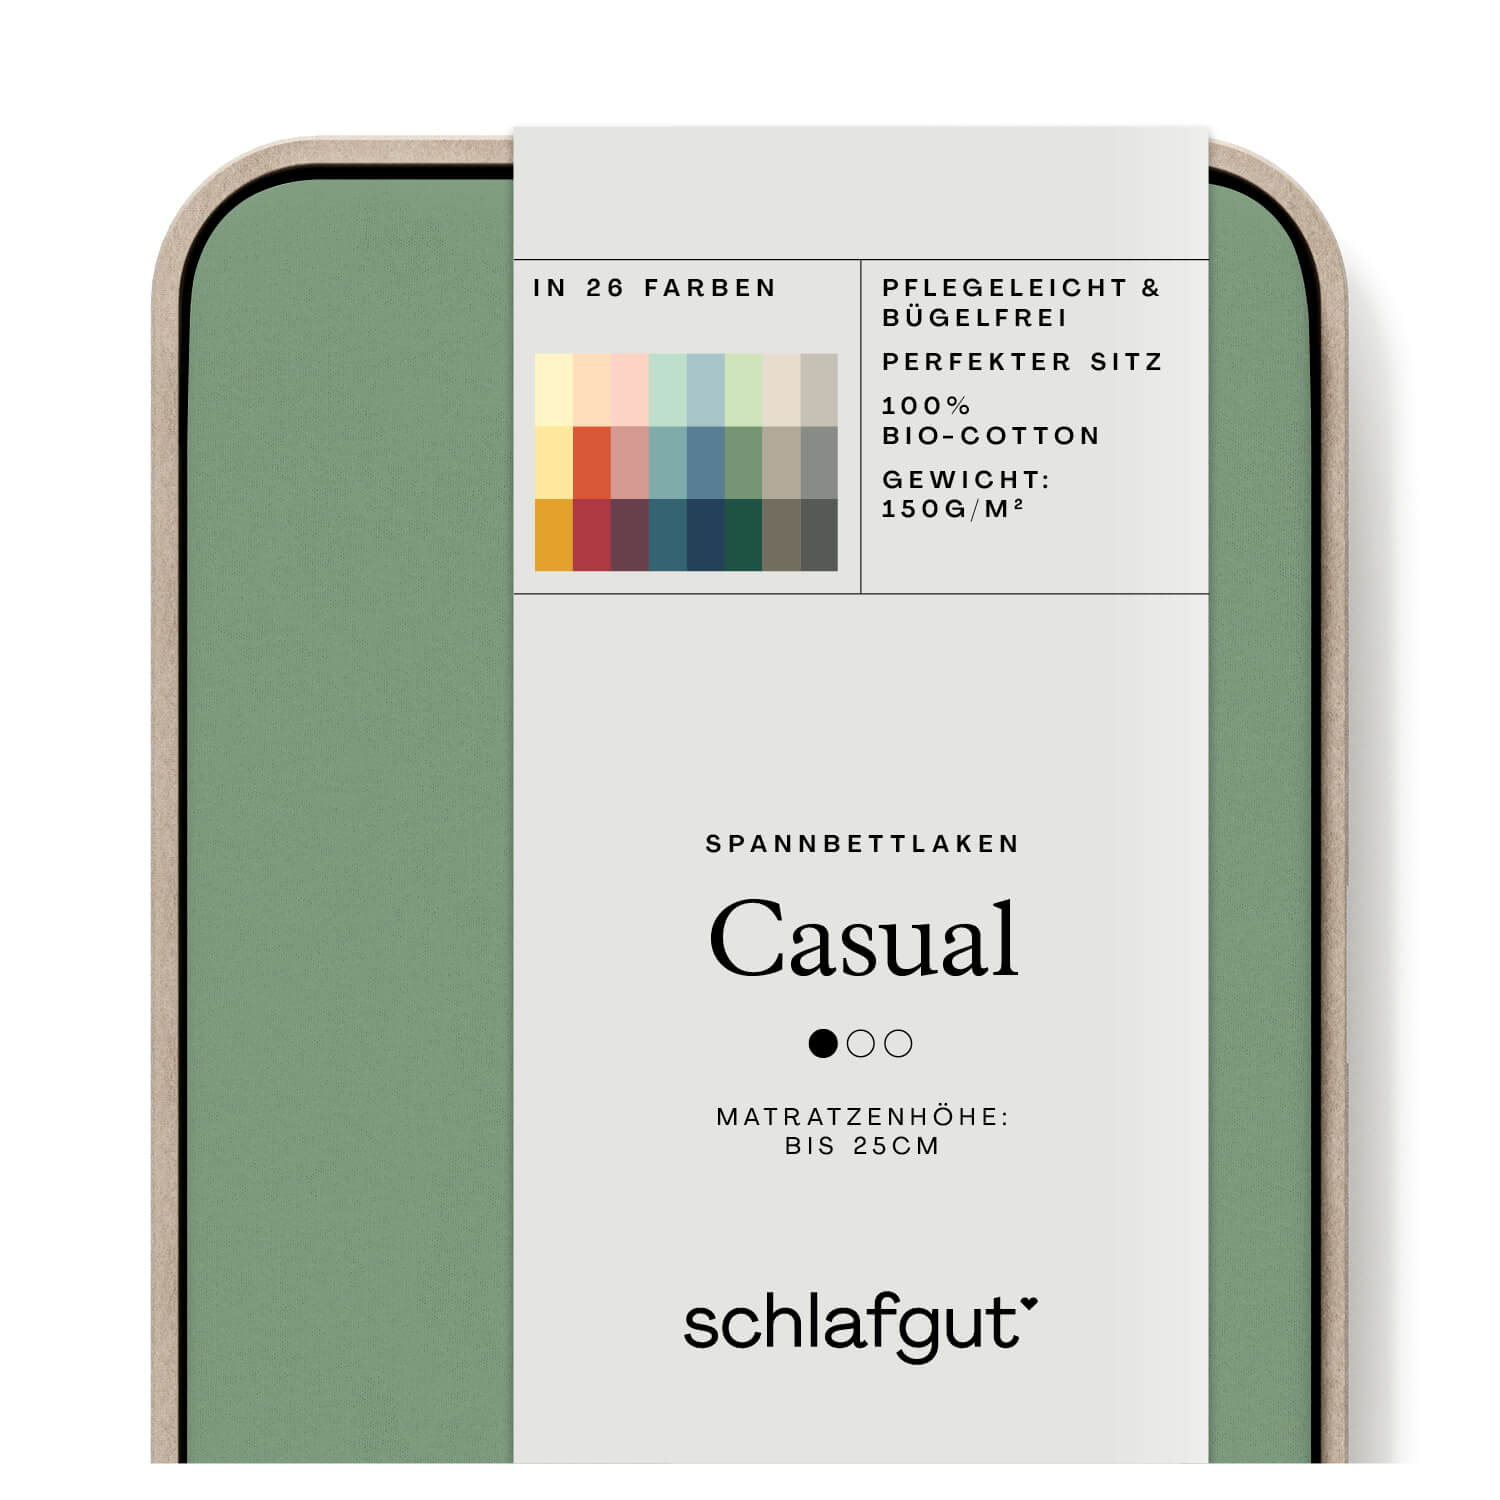 Das Produktbild vom Spannbettlaken der Reihe Casual in Farbe green mid von Schlafgut